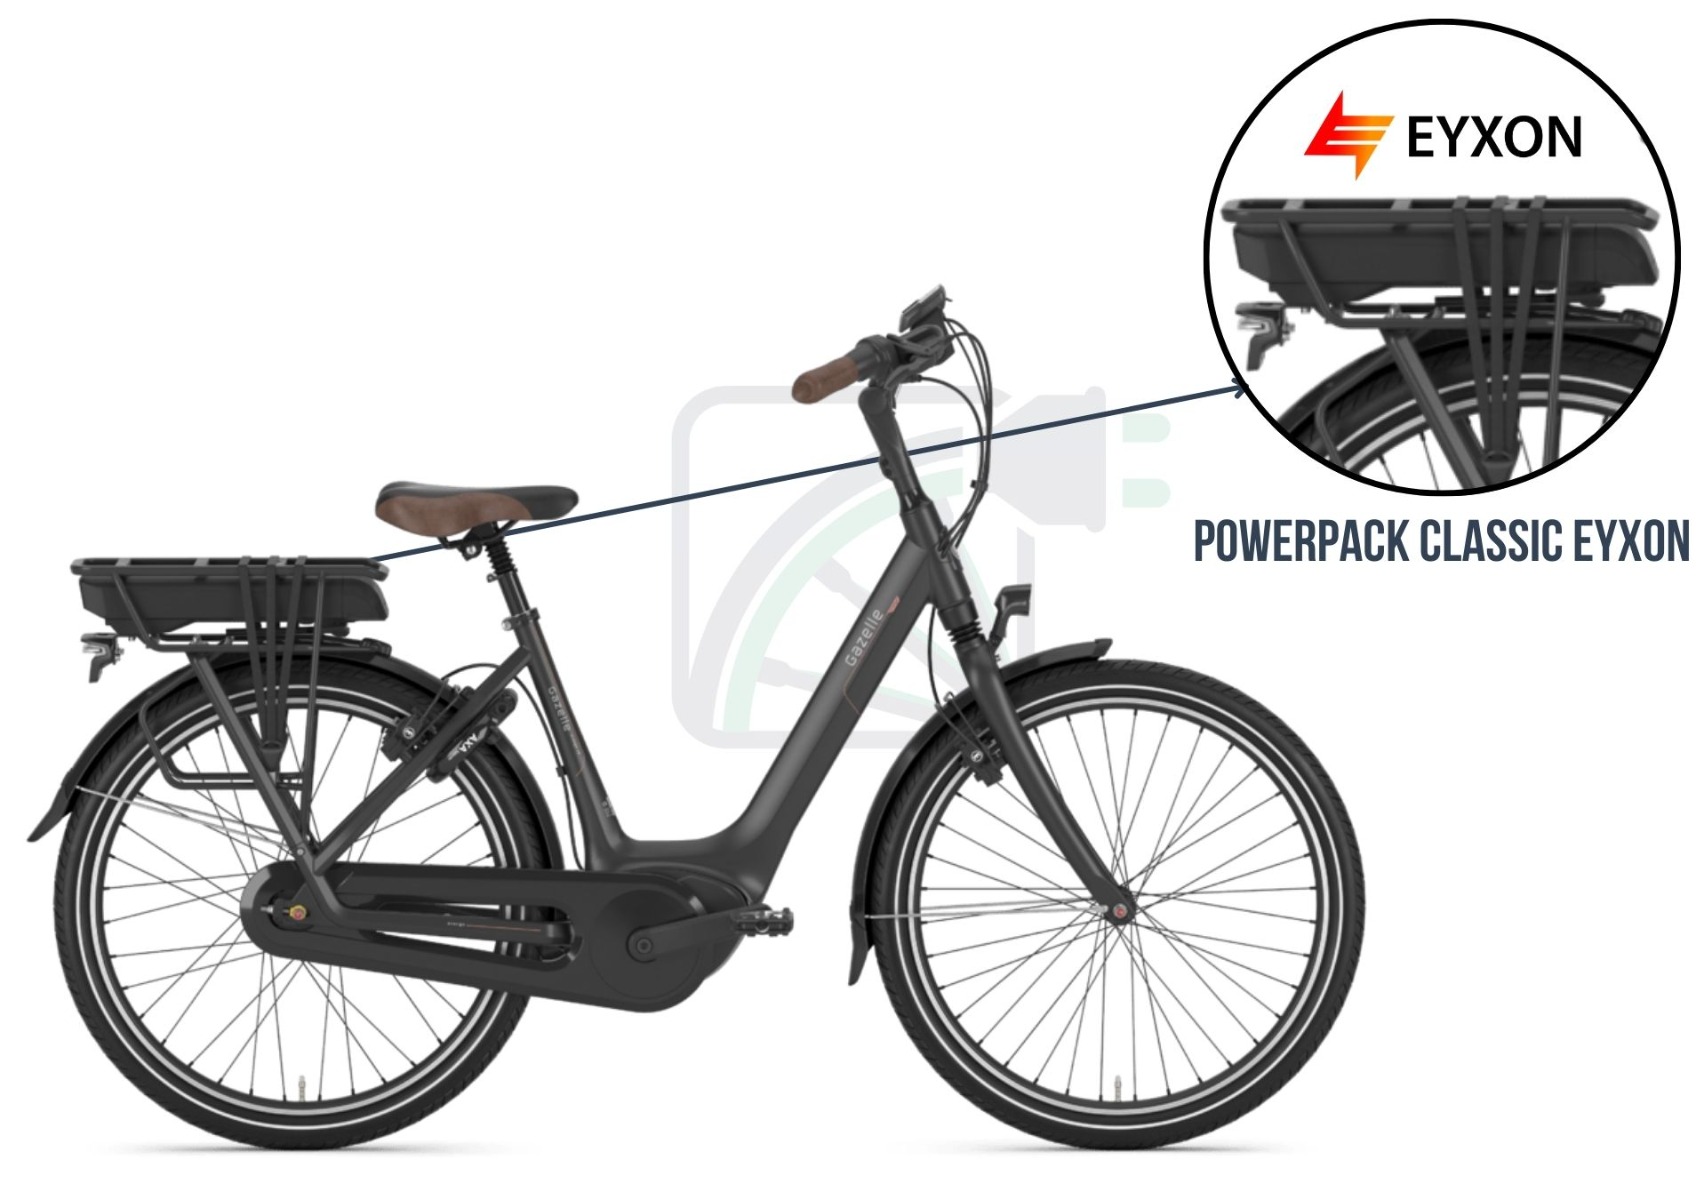 Een deel van de afbeelding is uitvergroot en de accu van de fiets is uitgelicht. De mogelijke accu's voor deze elektrische fiets worden ook genoemd. Dit zijj de Bosch Powerpack classic compatibel accu's van EYXON..